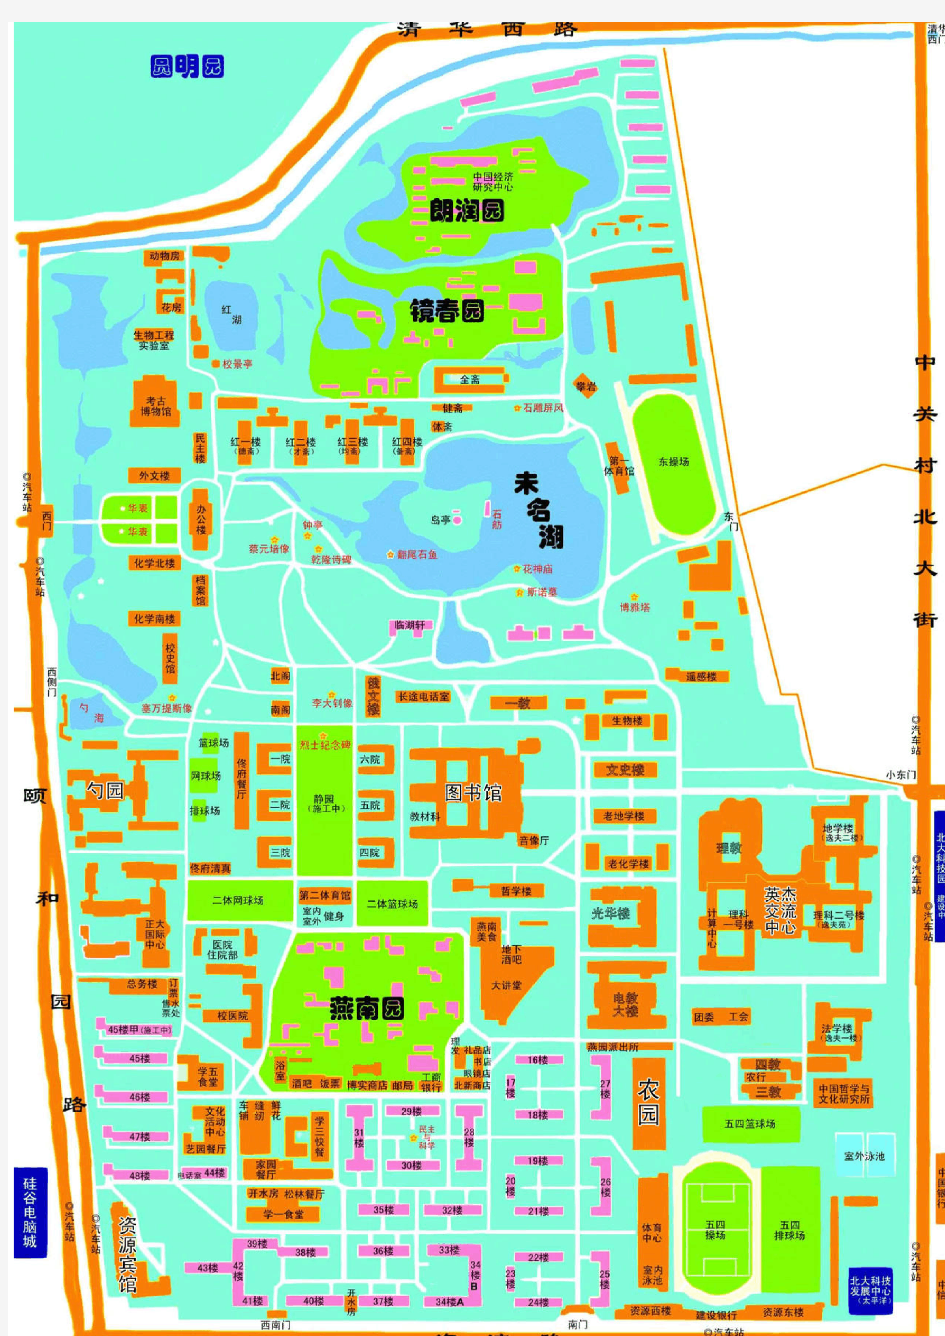 北大校园地图